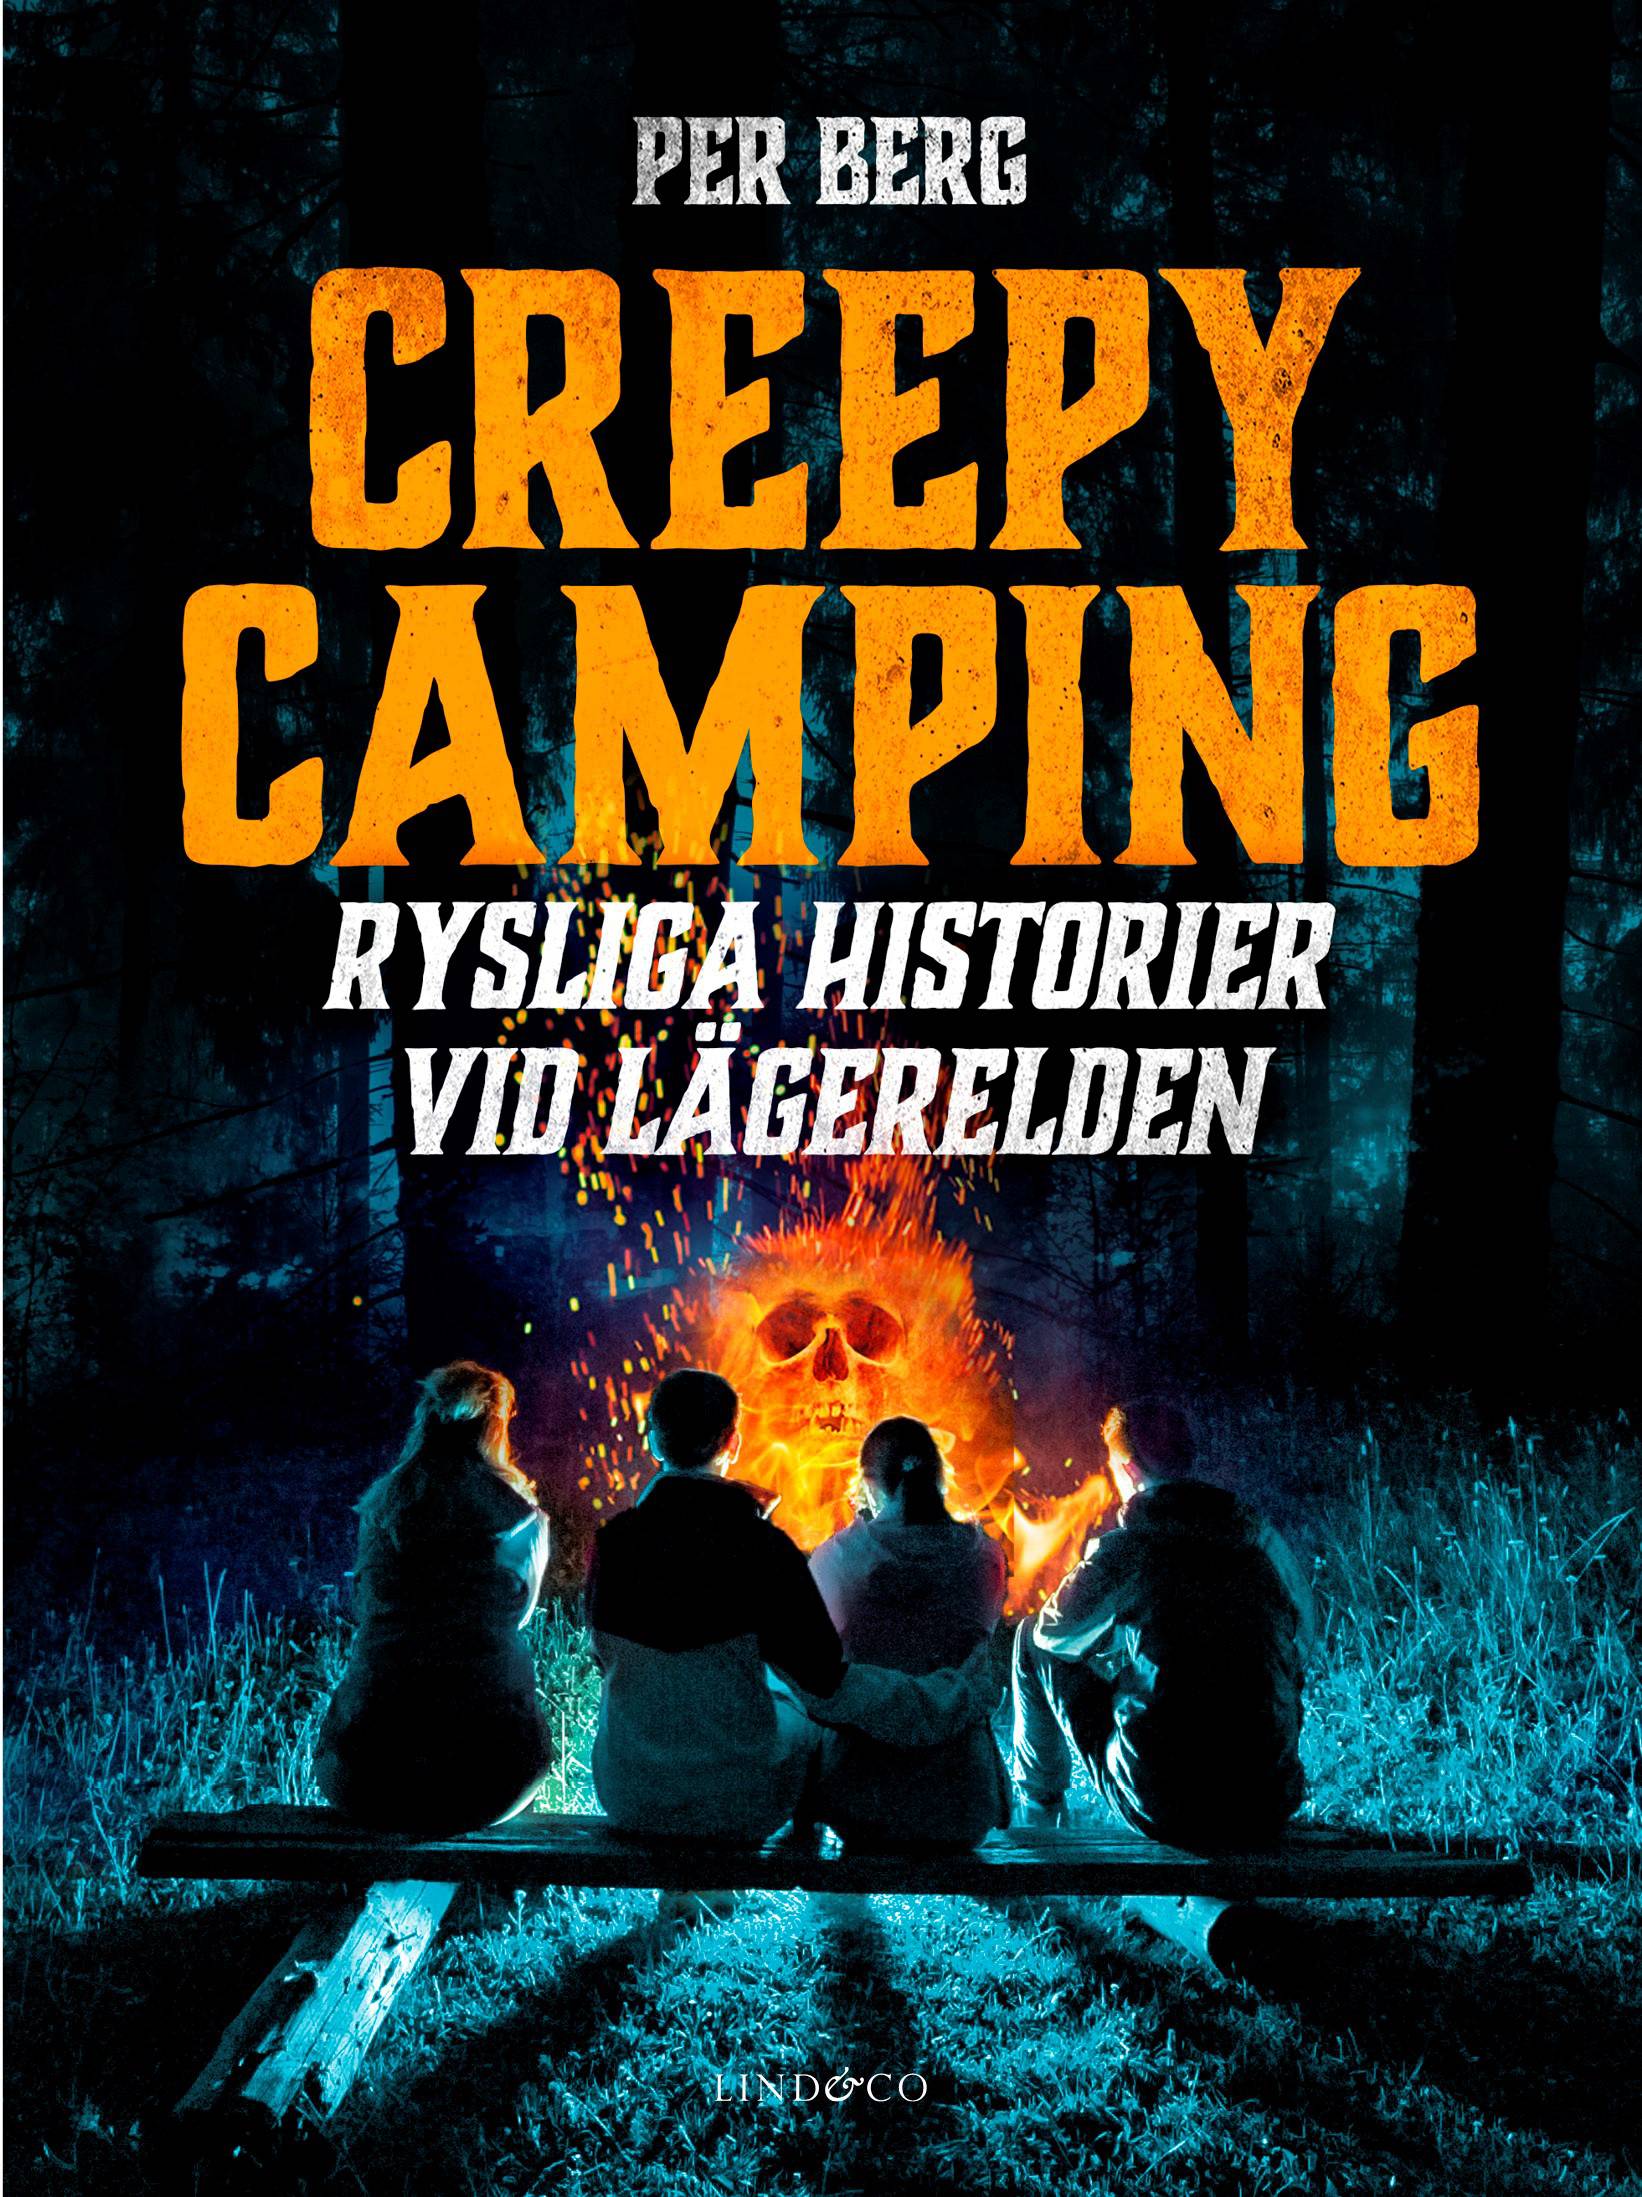 Creepy camping : rysliga historier vid lägerelden